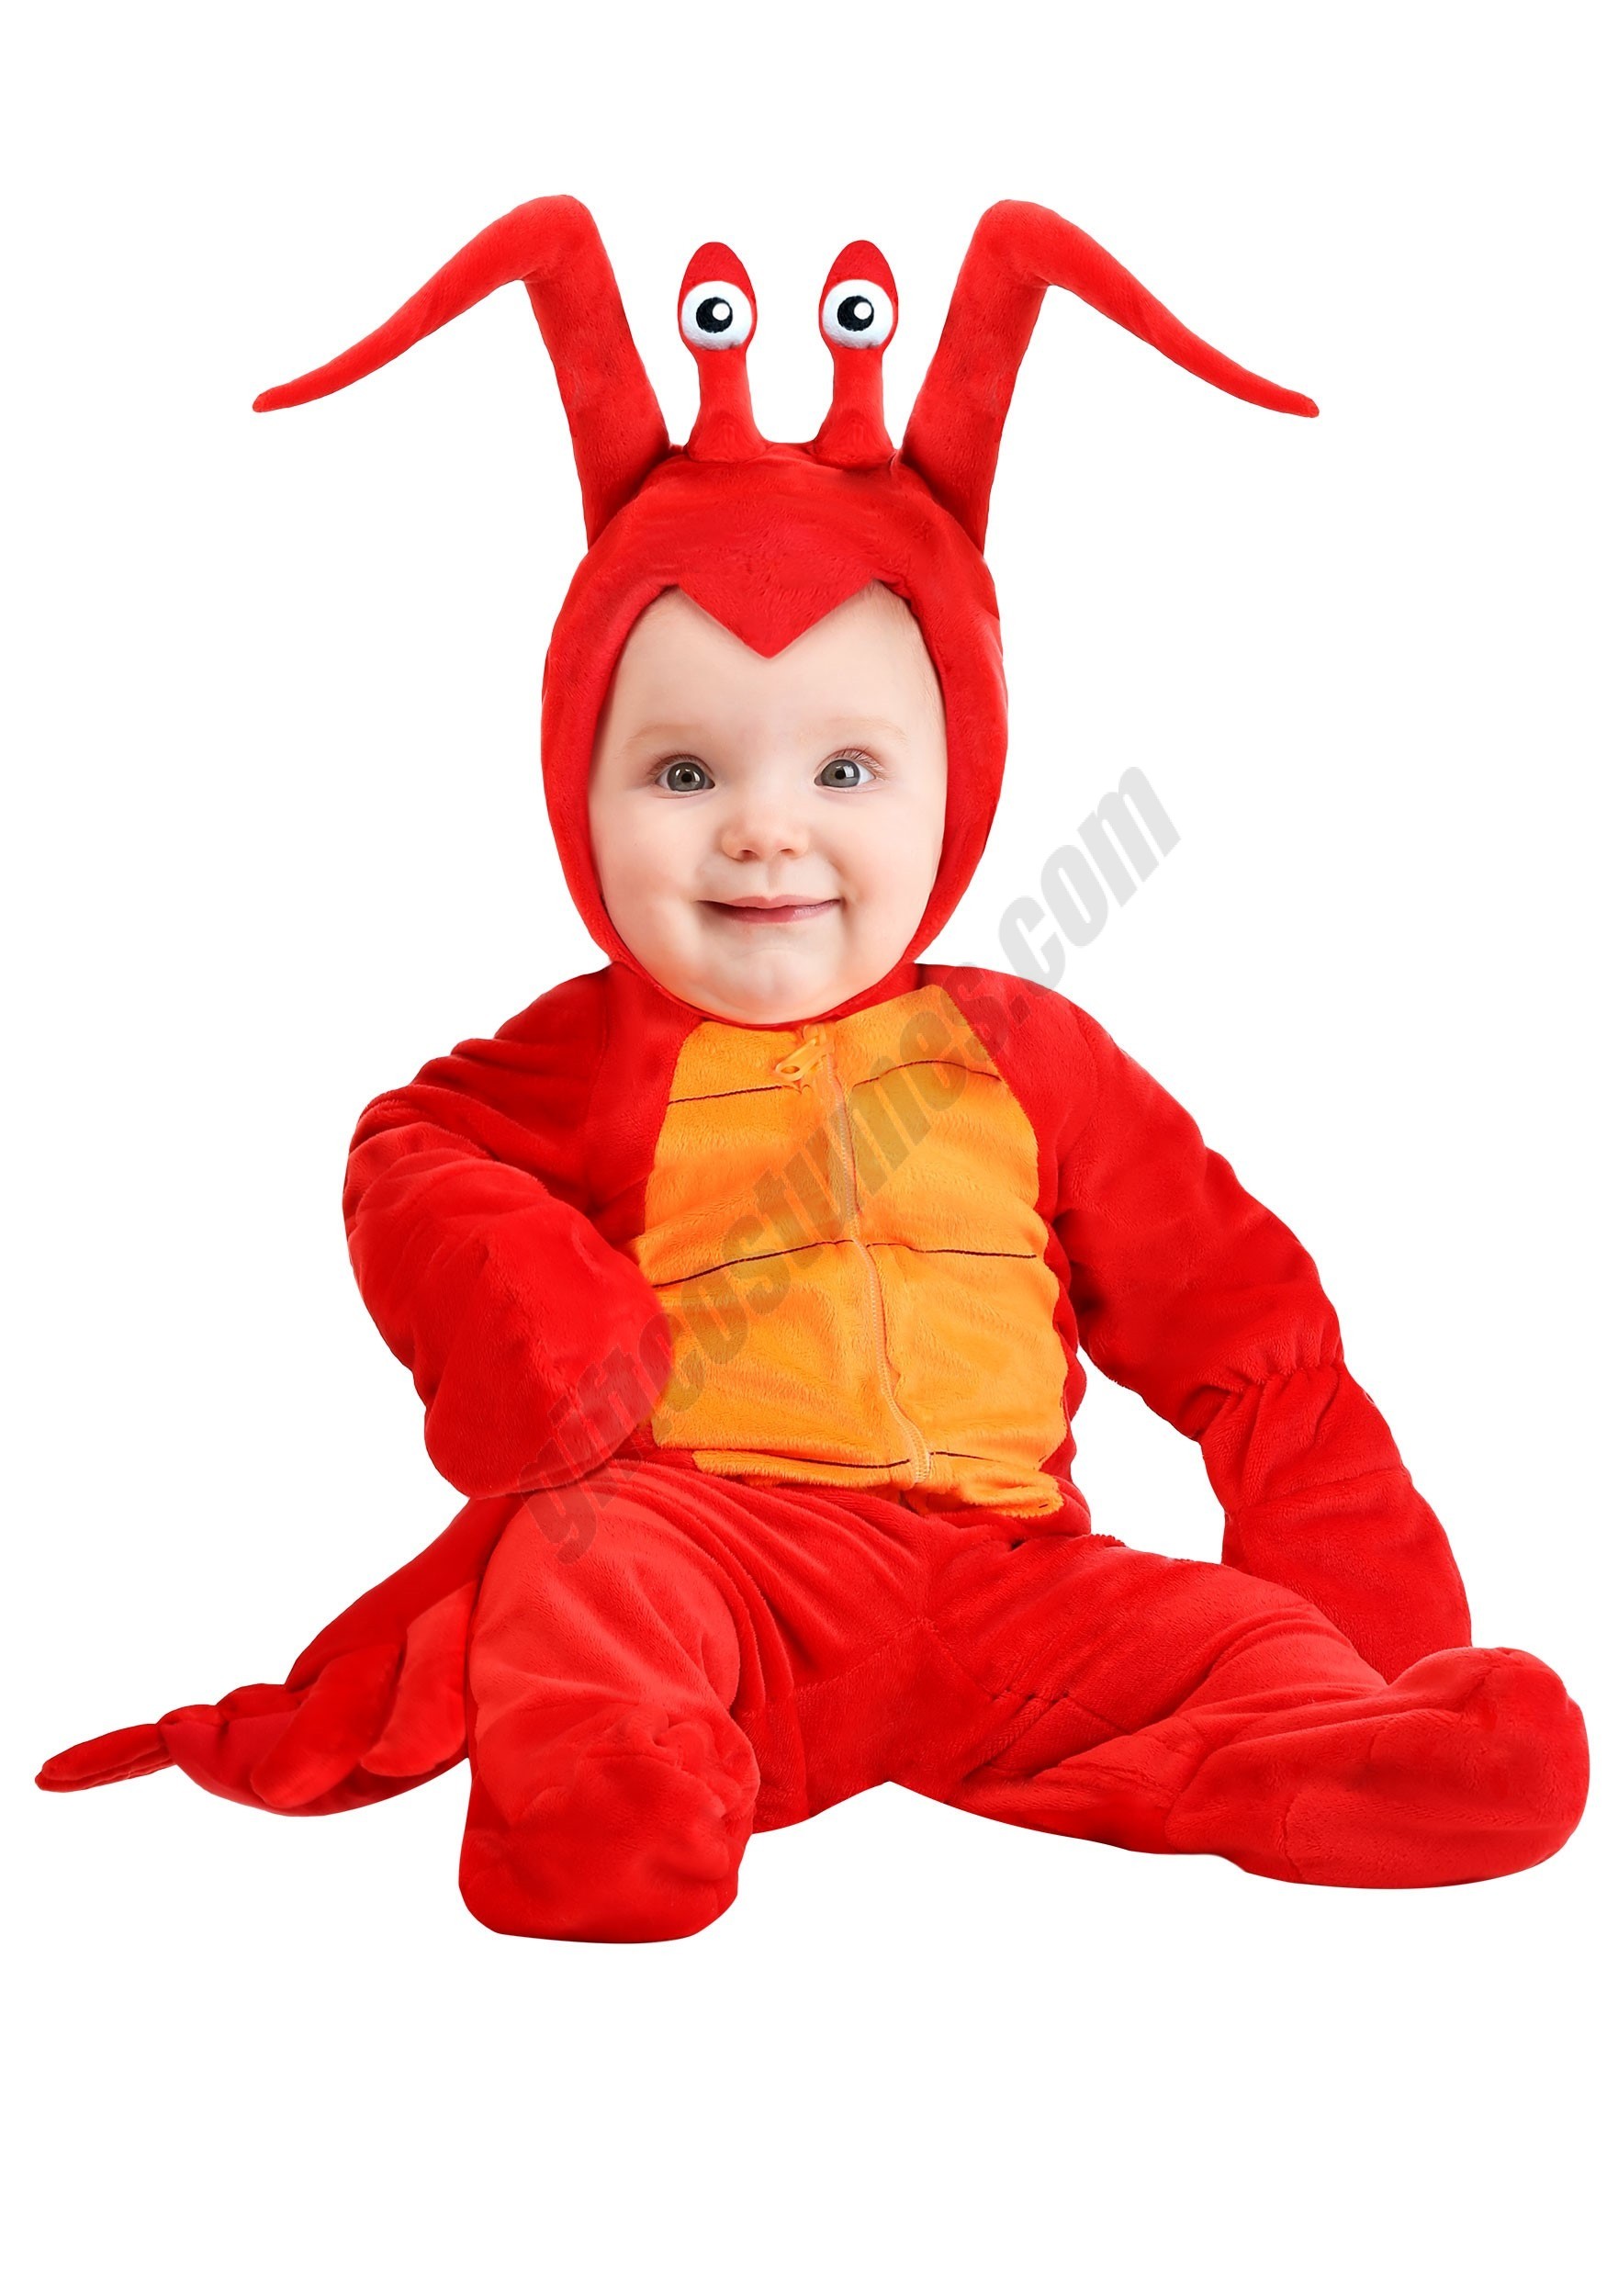 Infant Rock Lobster Costume Promotions - Infant Rock Lobster Costume Promotions